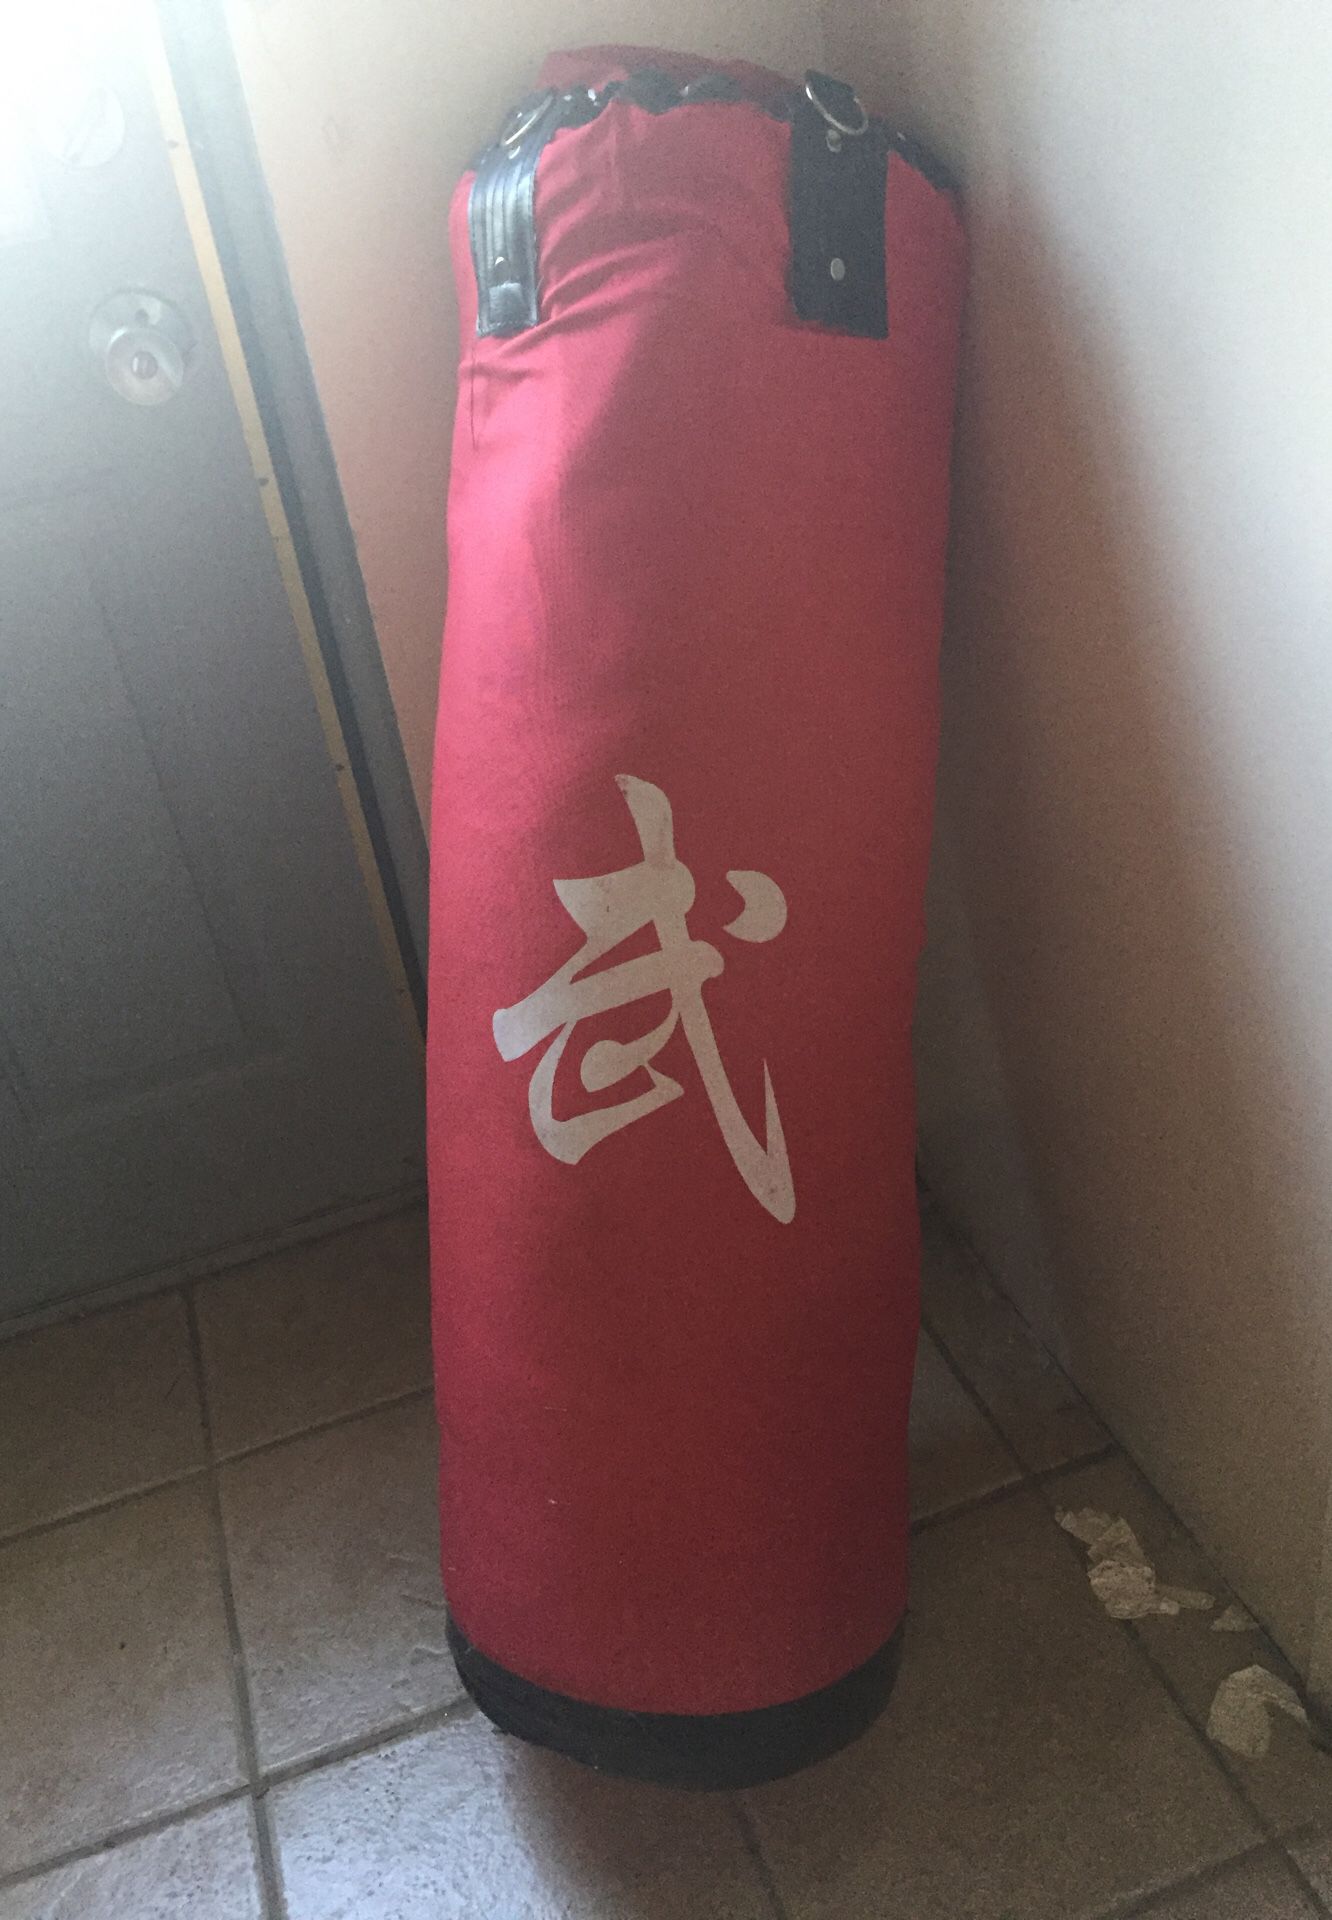 150 pound punching bag (sand)